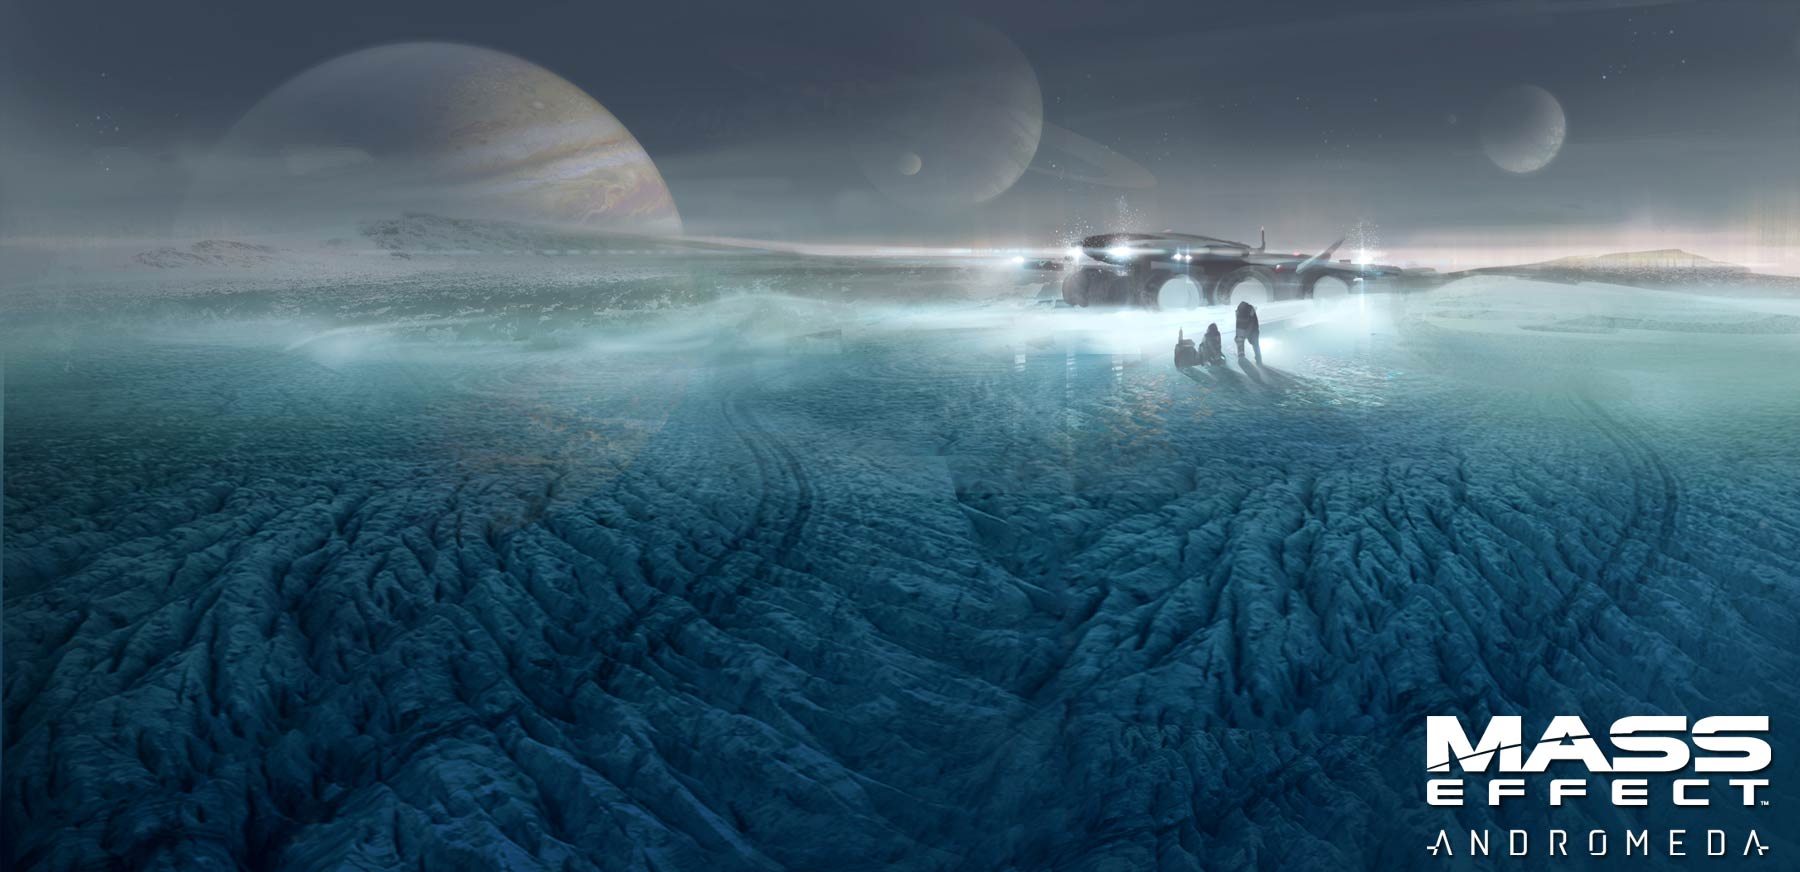 Immagine pubblicata in relazione al seguente contenuto: Bioware e EA pubblicano il teaser trailer di Mass Effect Andromeda | Nome immagine: news23332_Mass-Effect-Image_1.jpg